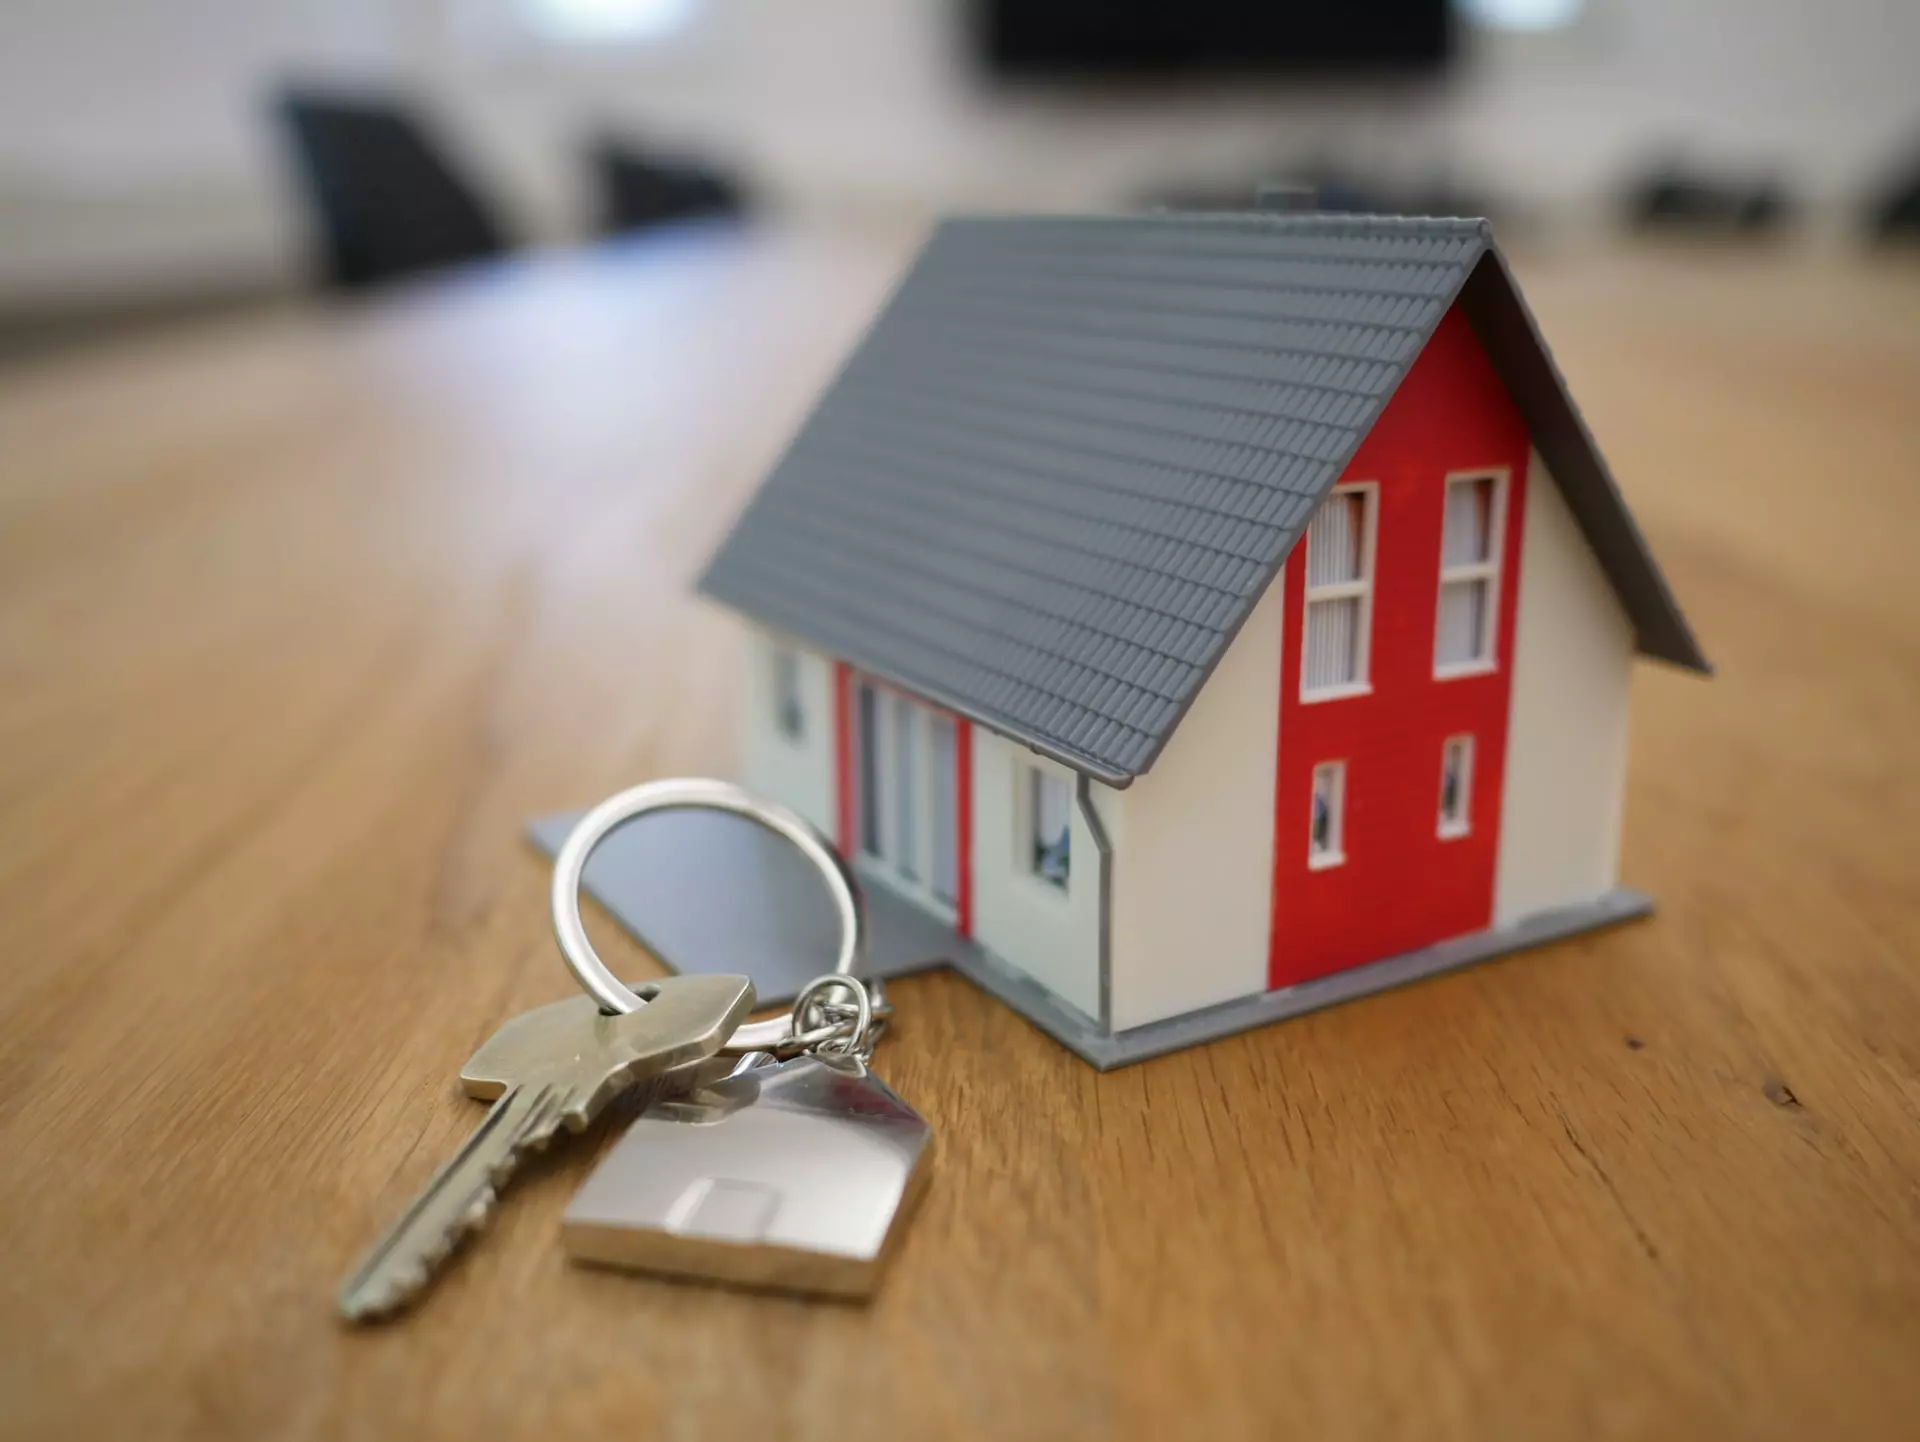 Diagnostics immobiliers obligatoires avant vente ou location illustration